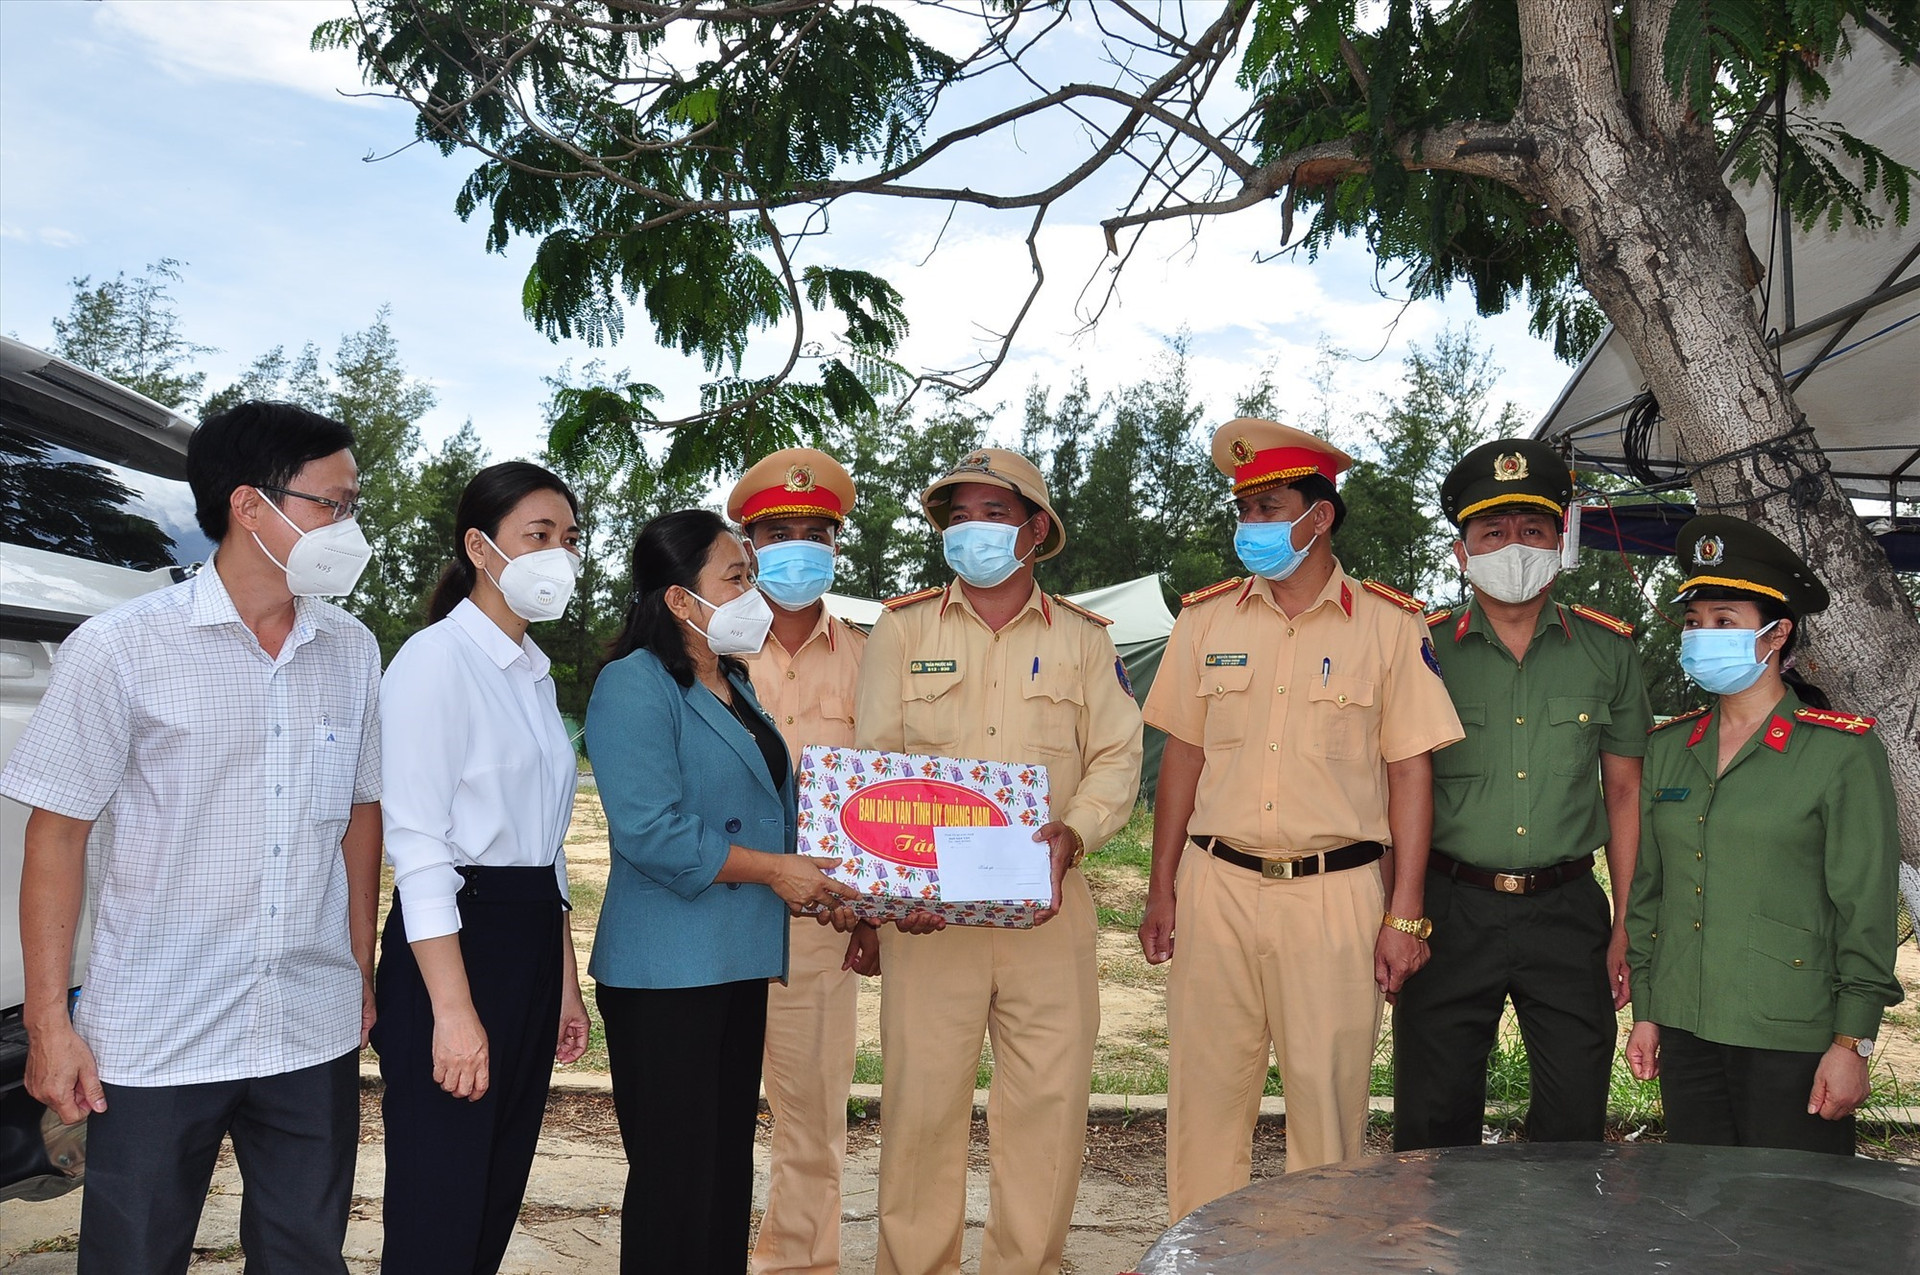 Trưởng ban Dân vận Tỉnh ủy Huỳnh Thị Thùy Dung đến thăm, động viên lực lượng làm nhiệm vụ tại chốt kiểm soát phòng chống dịch bệnh Covid-19. Ảnh: VINH ANH